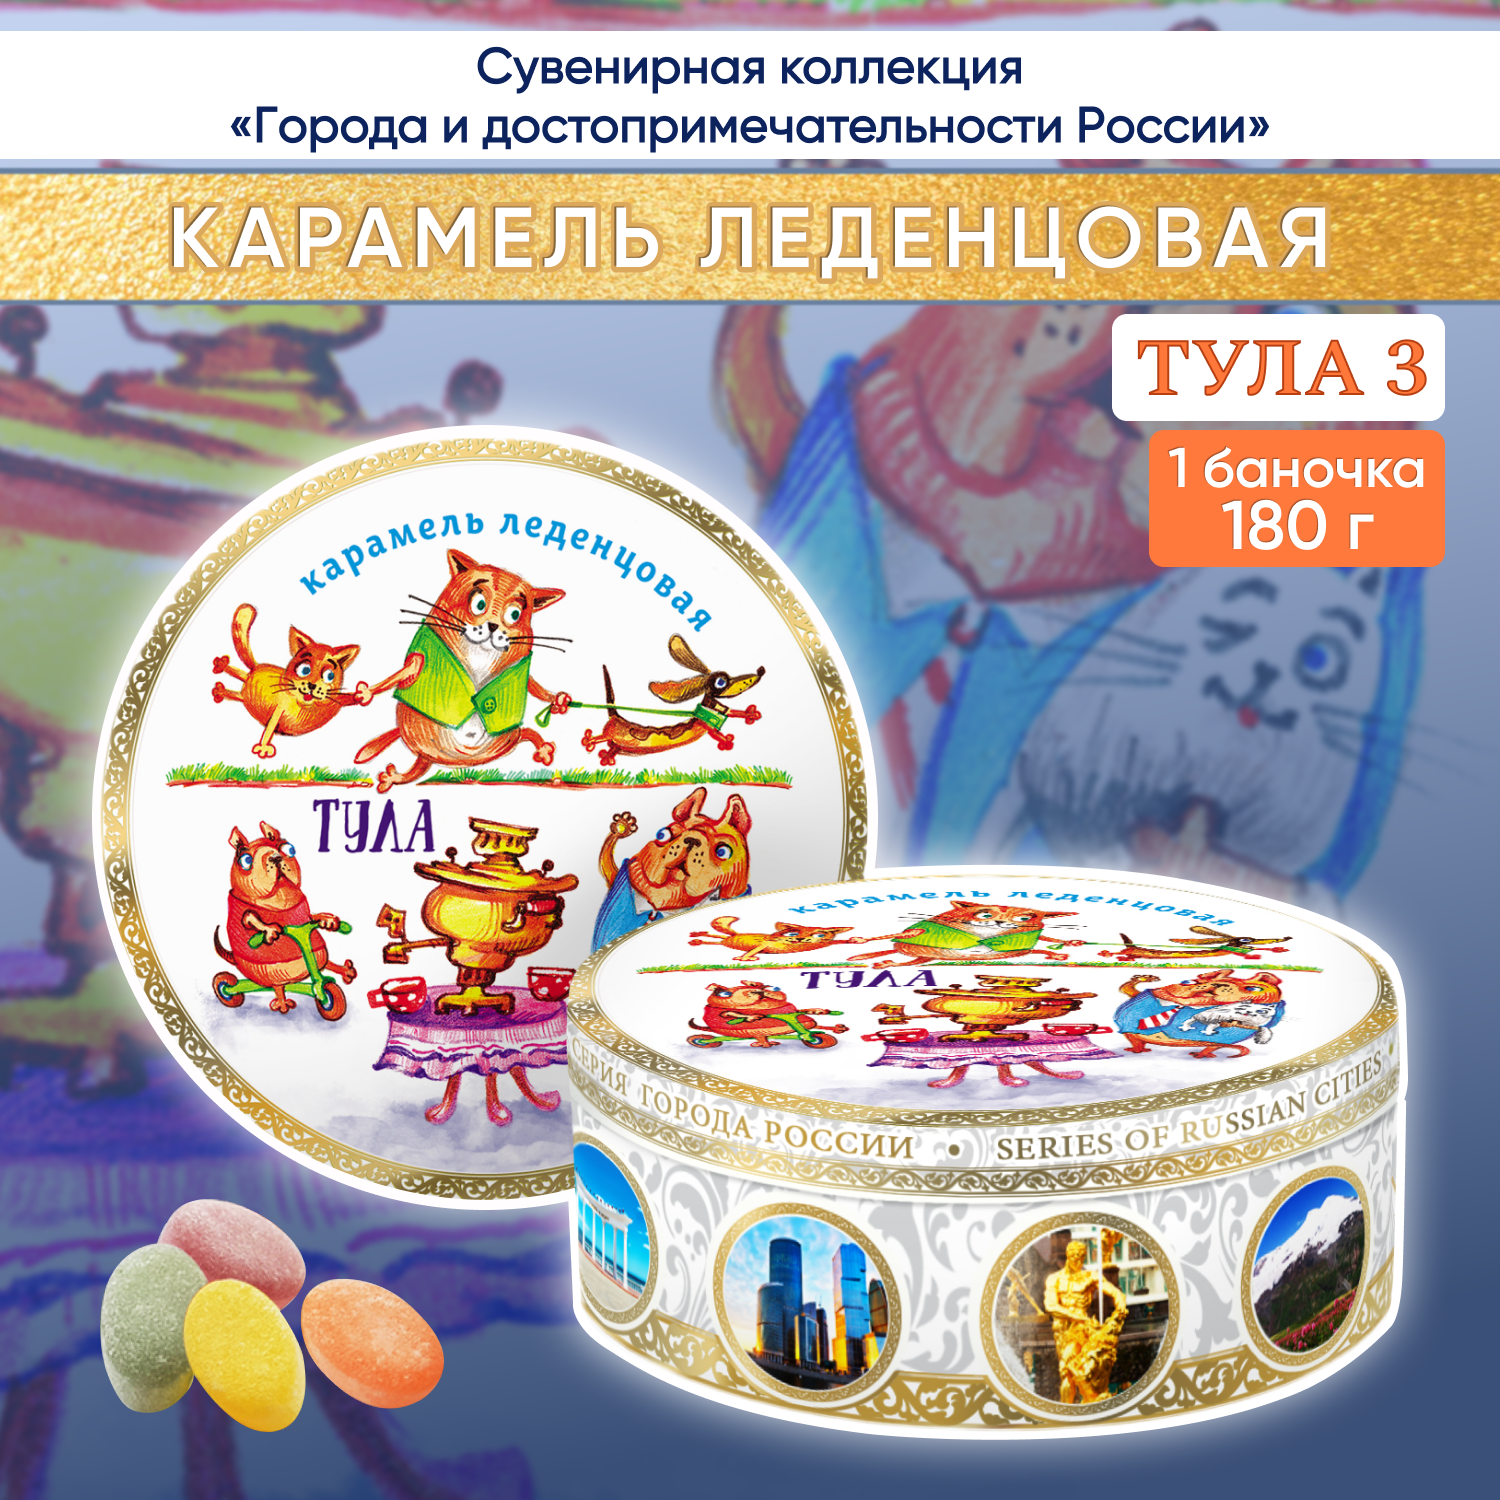 Карамель леденцовая, сувенирная DARLIN DAY Тула -3, 180 г